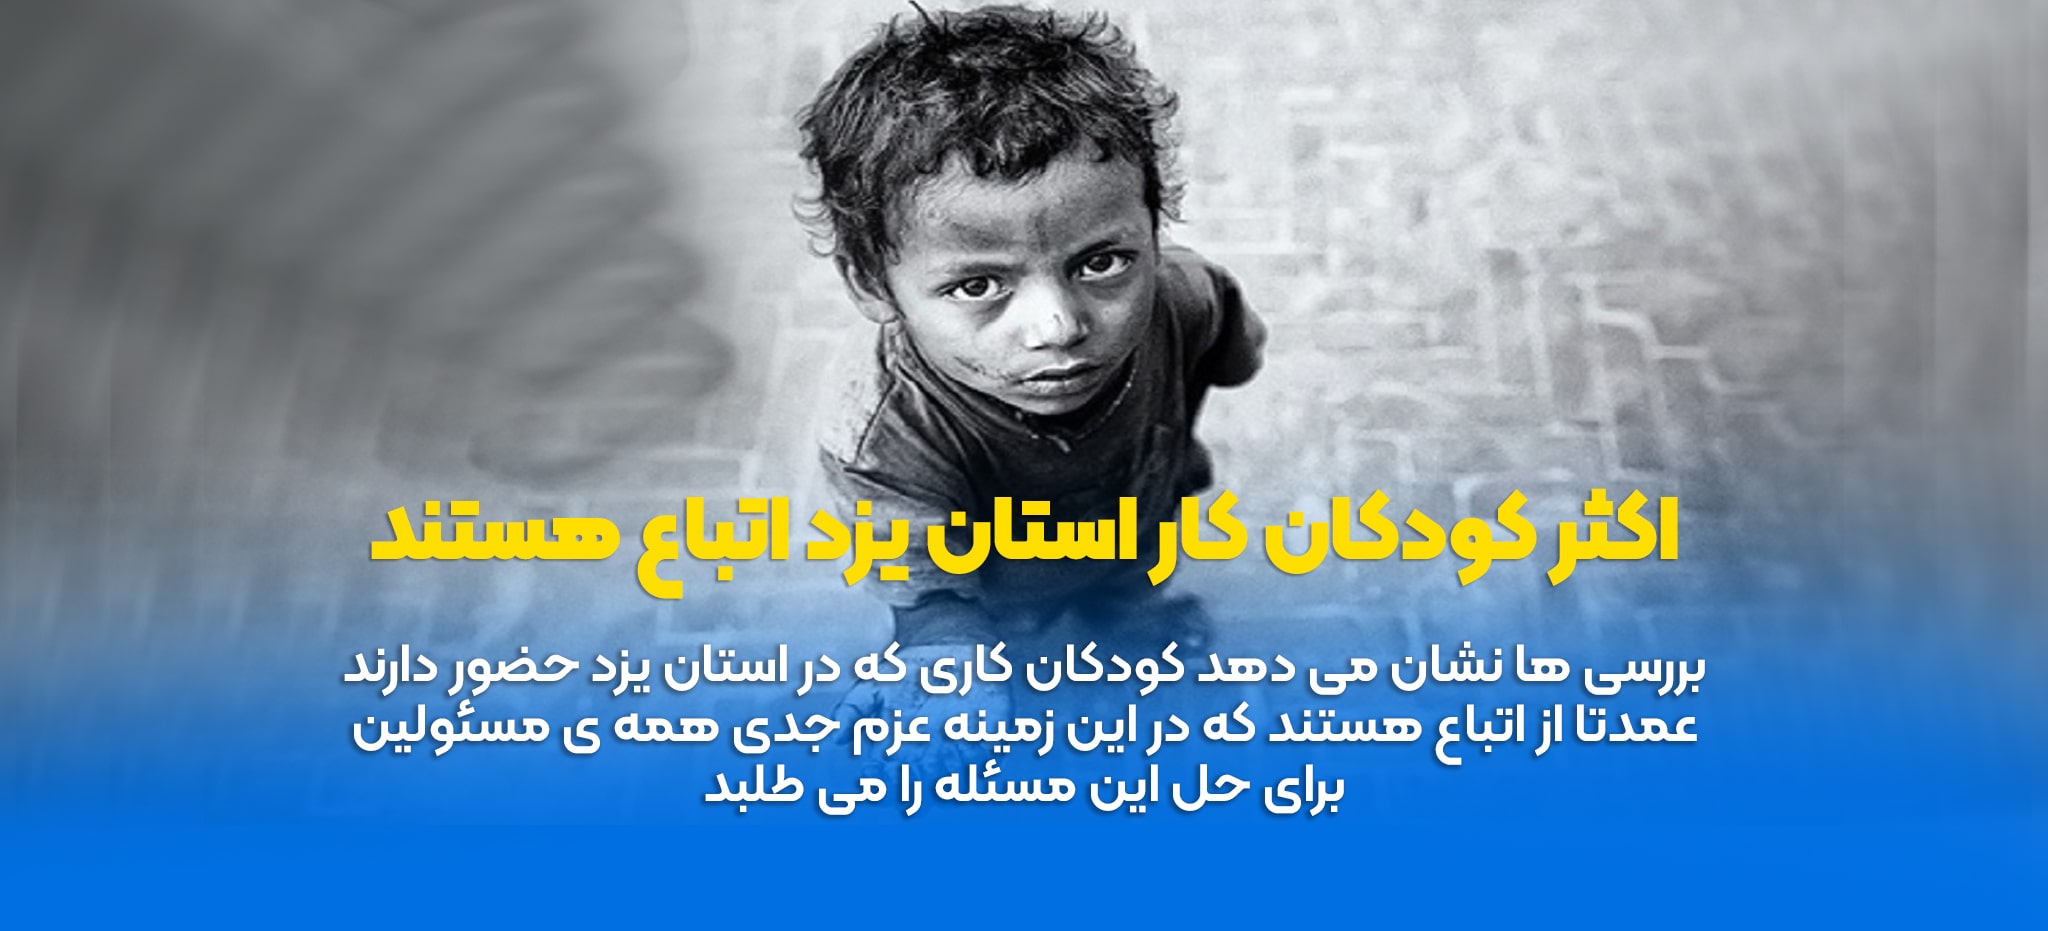 اکثر کودکان کار استان یزد اتباع هستند-min